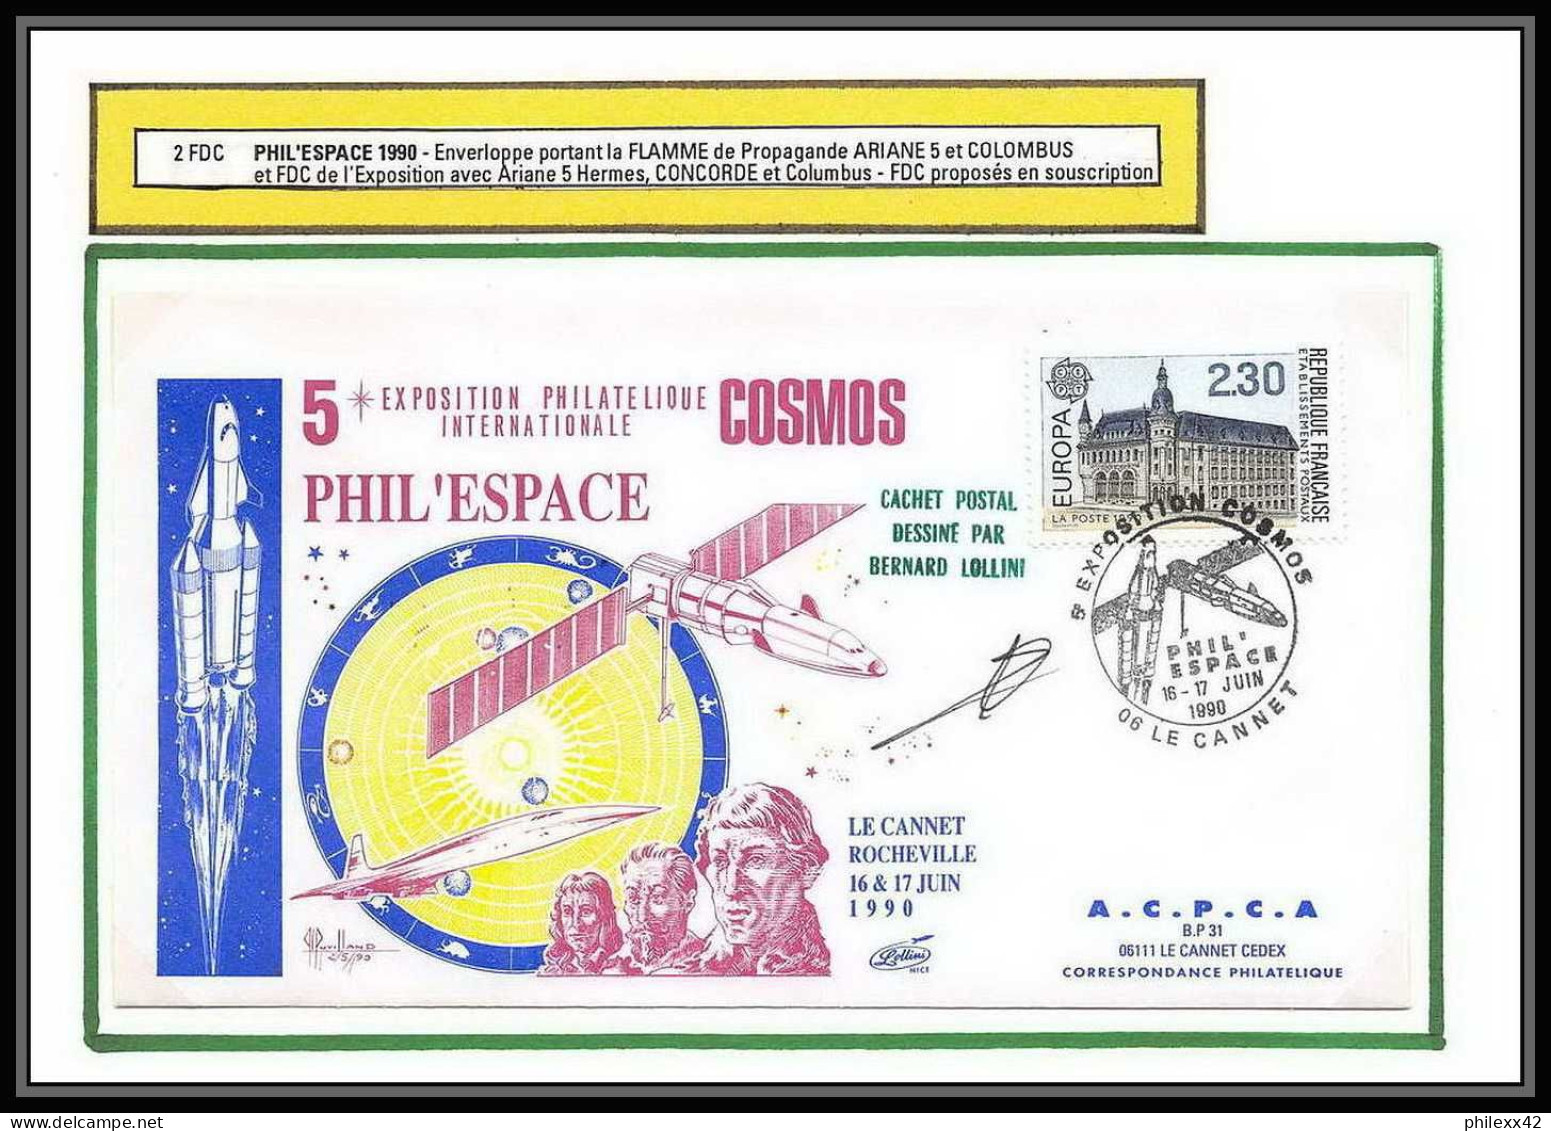 12067 Souscription Phil'espace Cosmos 1990 Le Cannet Ariane 5 Columbus Signé Lollini France Espace Space Lettre Cover - Europe